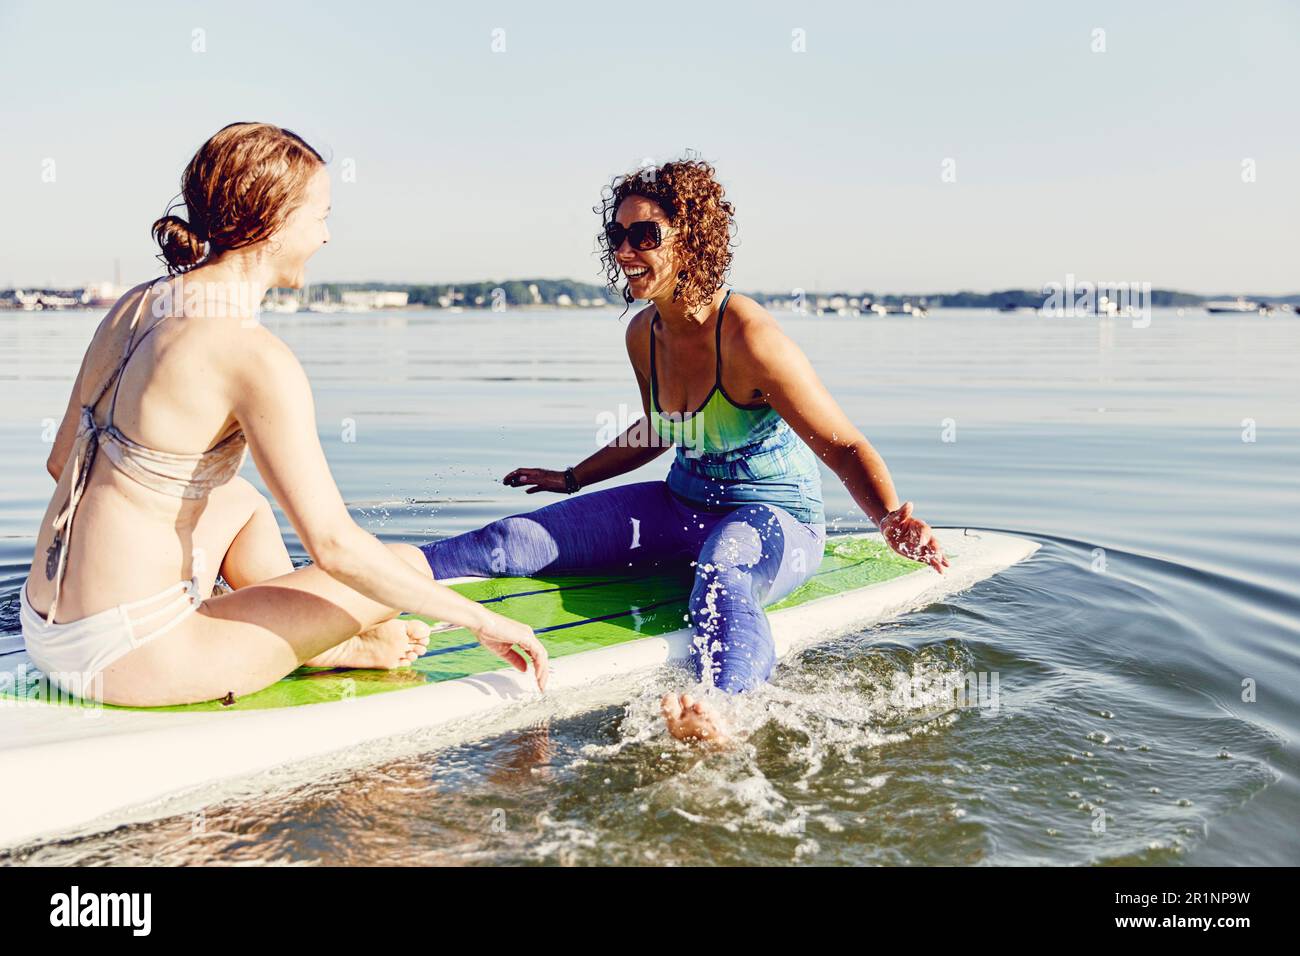 Zwei junge Frauen, die Spaß auf einem Stehpaddelbrett haben Stockfoto